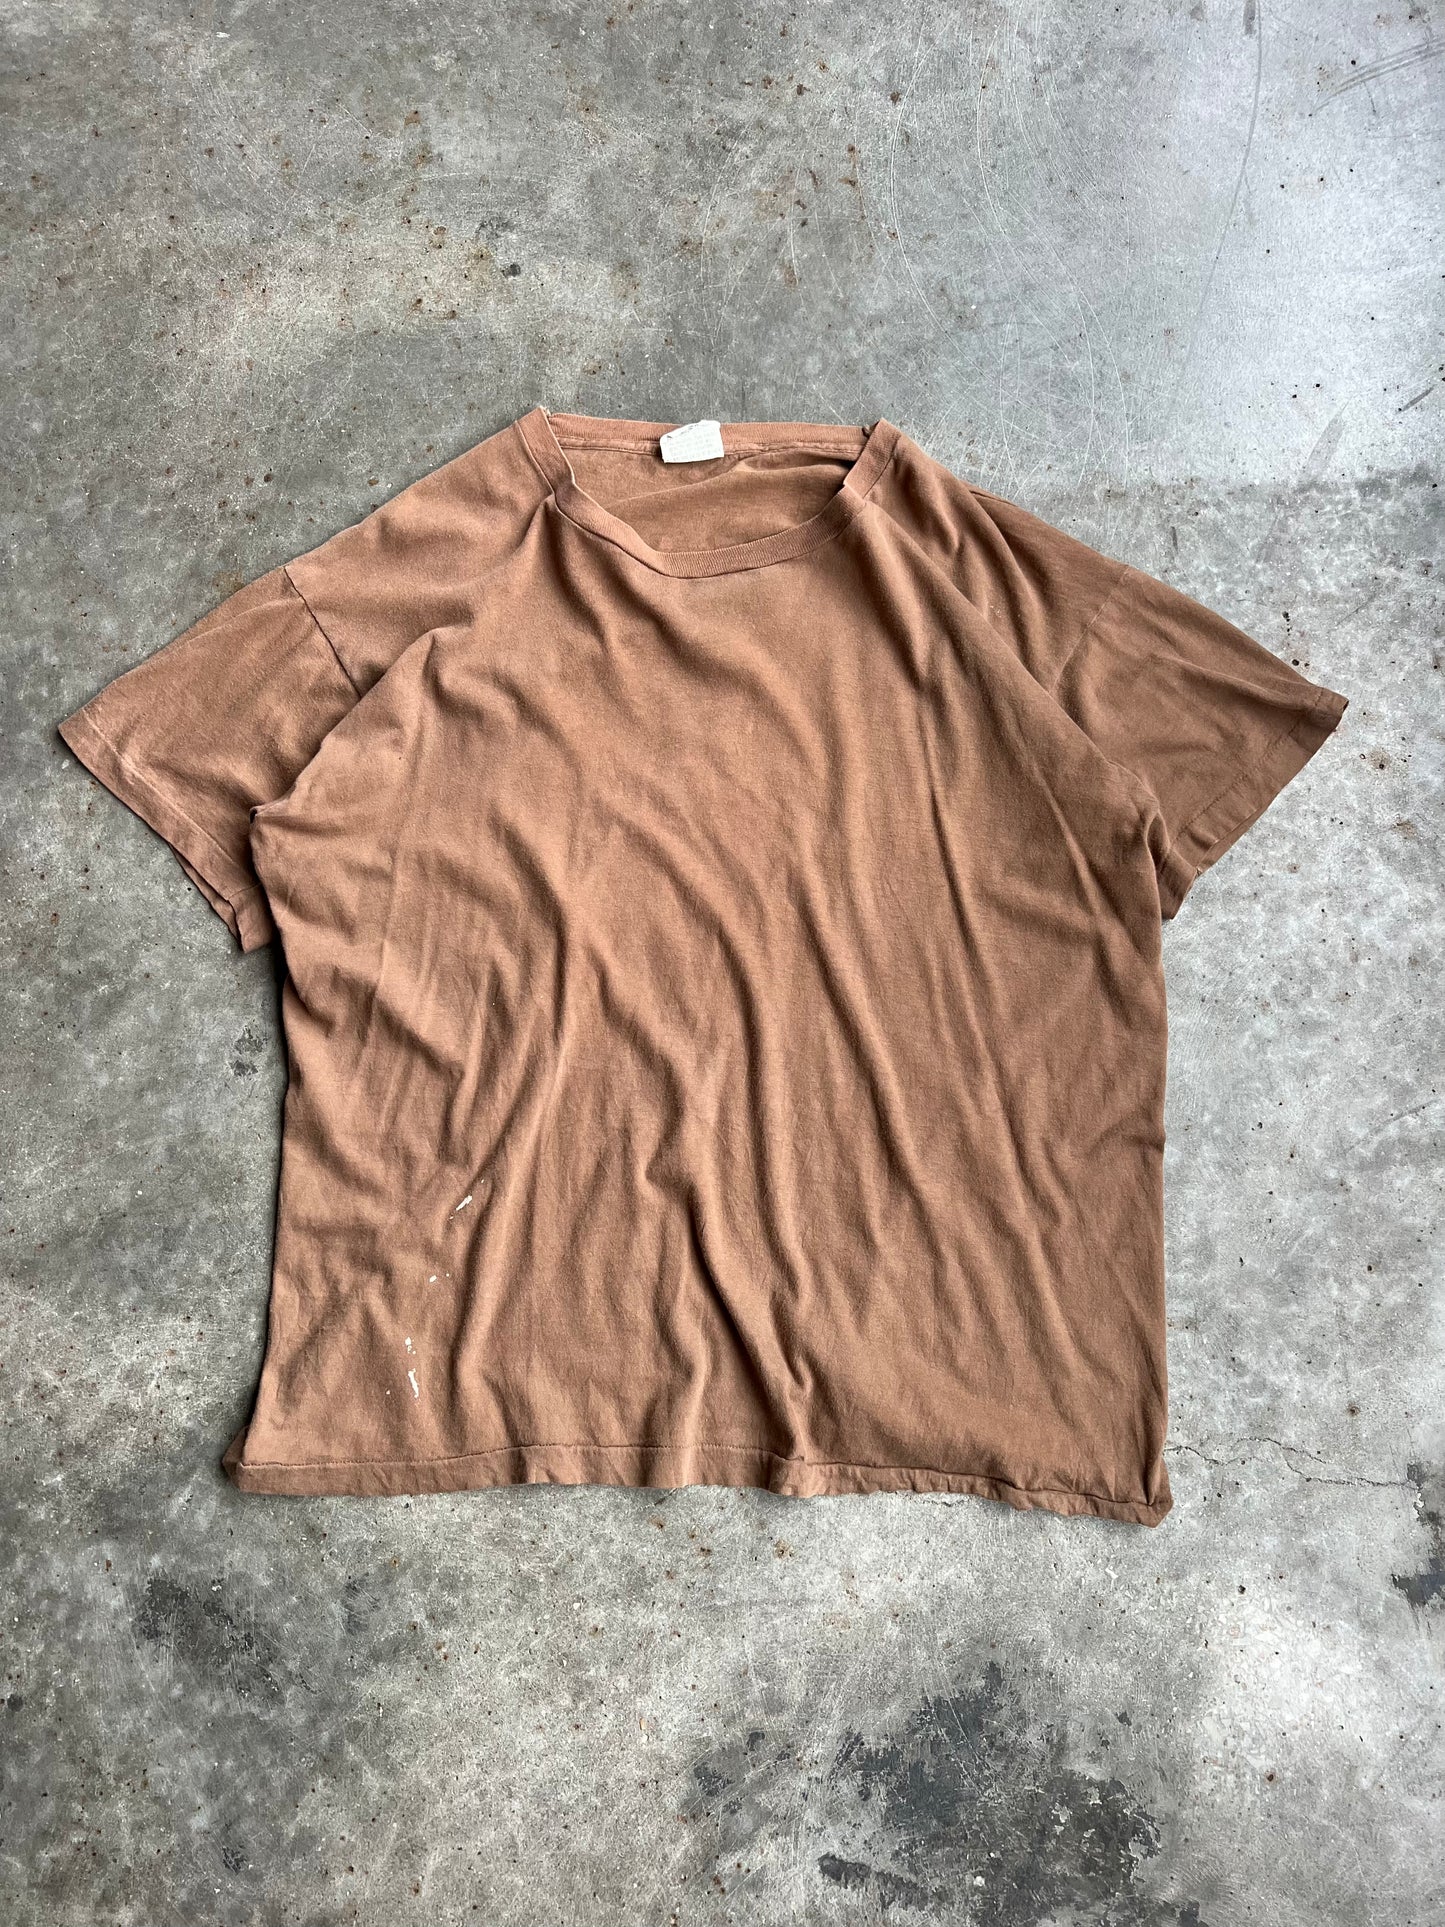 Vintage Brown Undershirt - XL